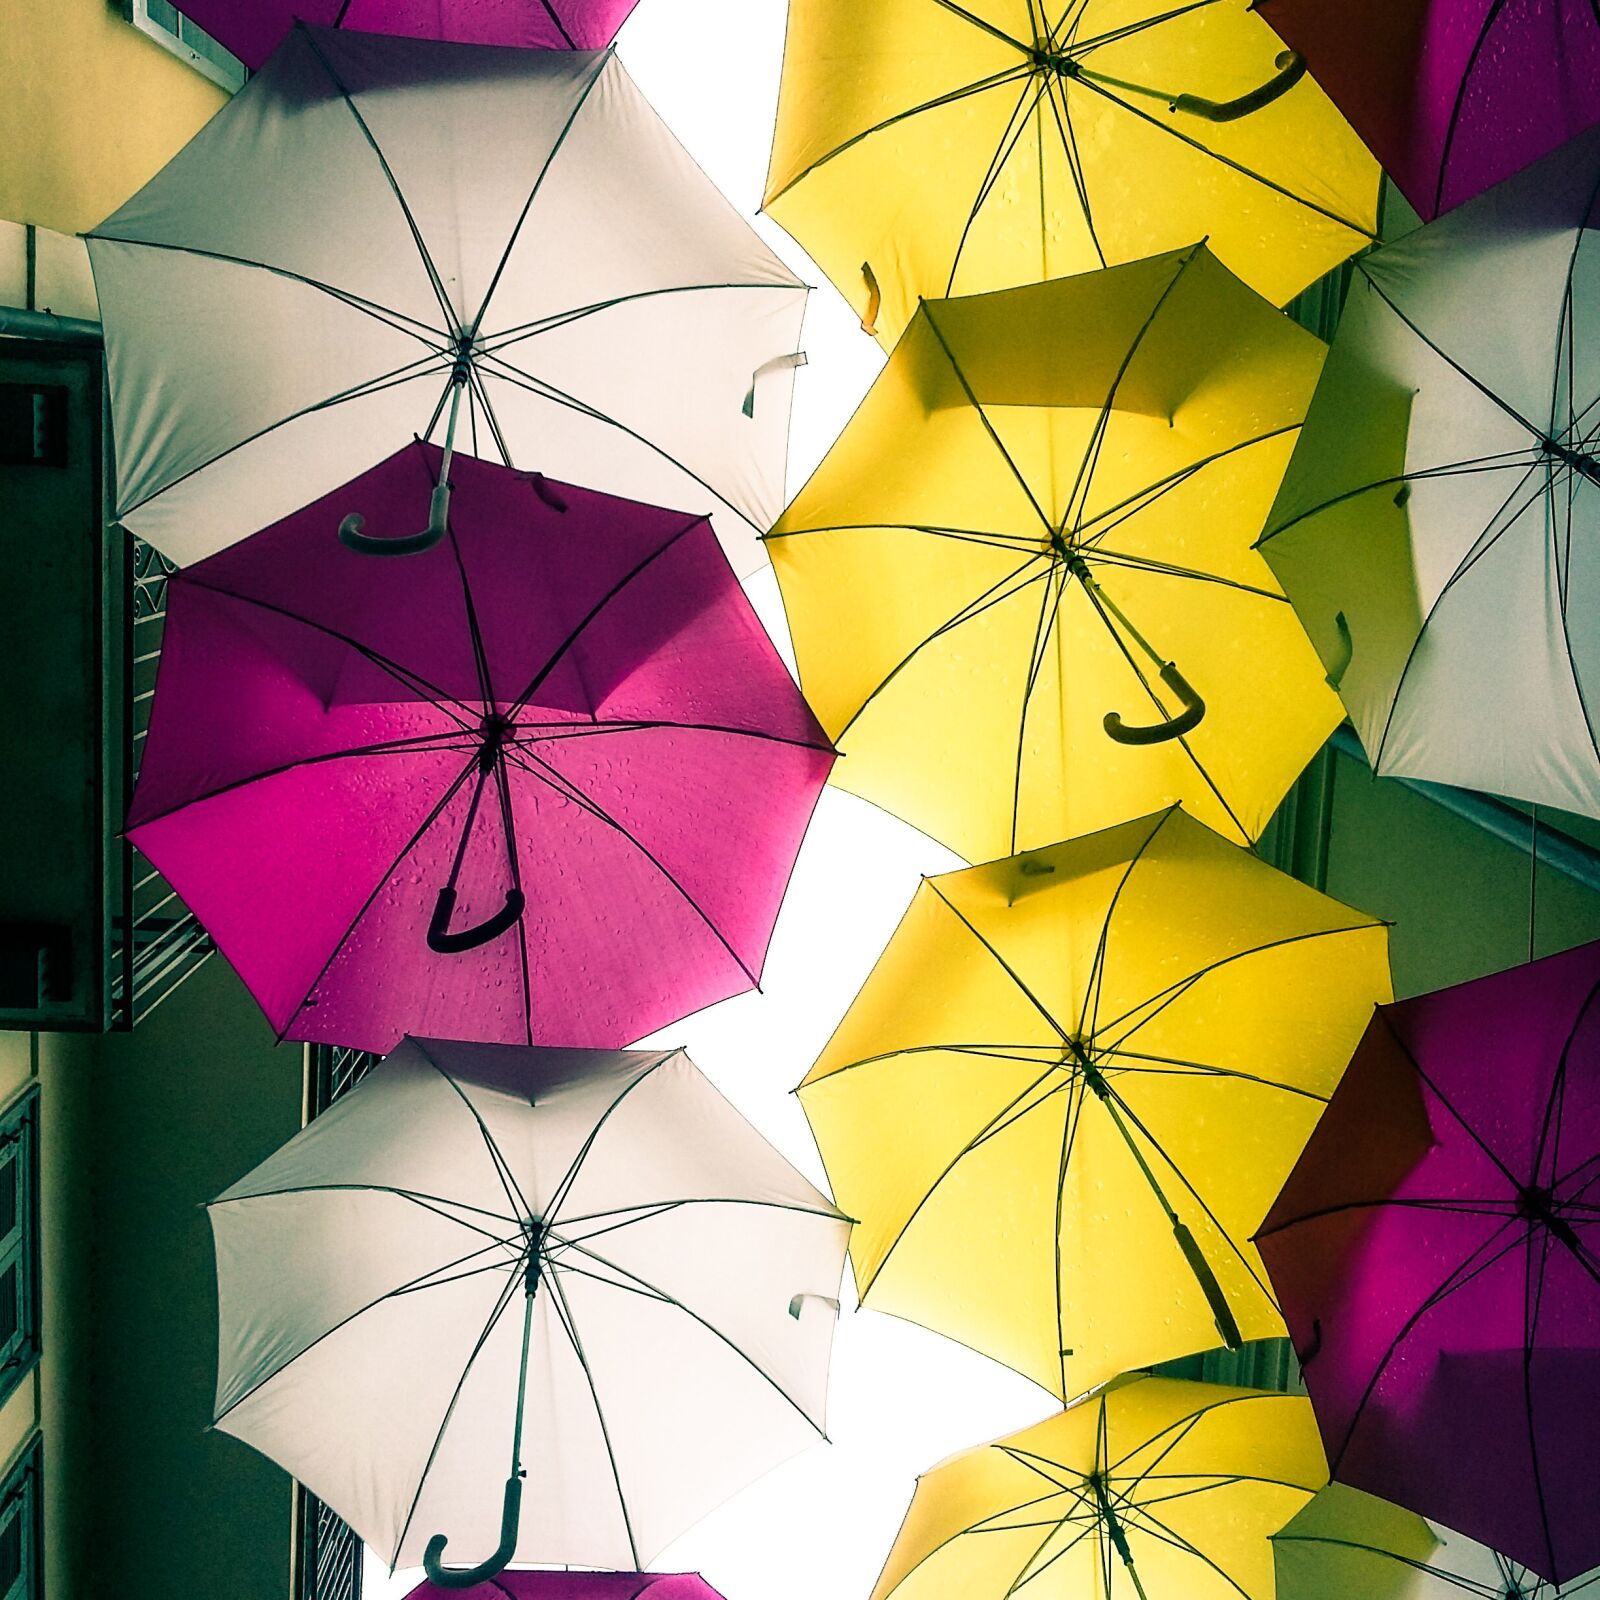 Samsung Galaxy A3 sample photo. Umbrella, umbrellas, rain photography